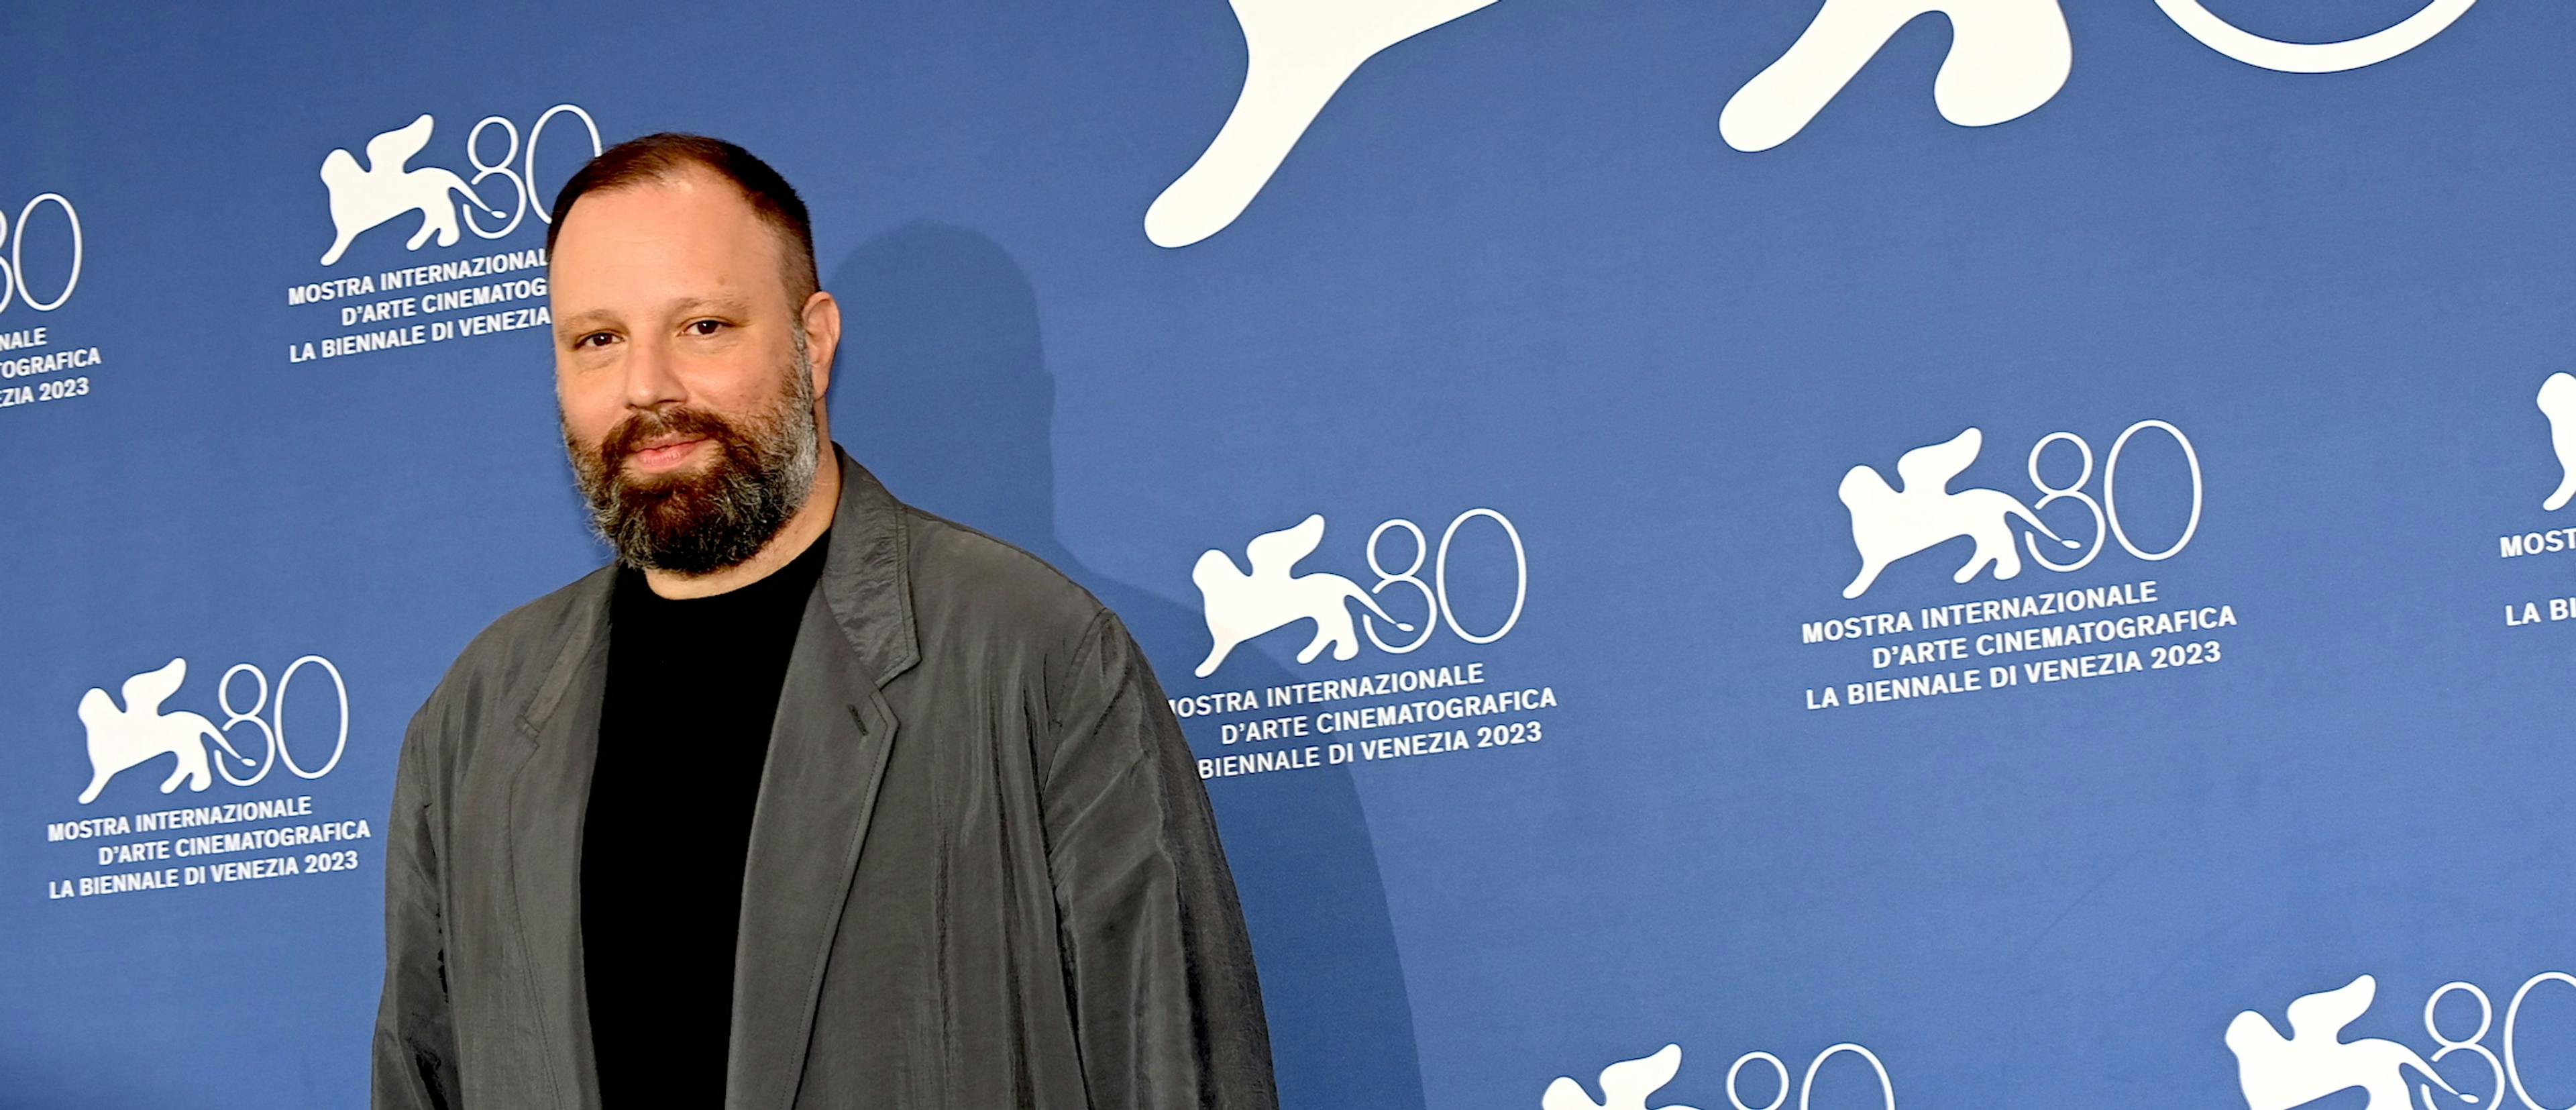 El director Yorgos Lanthimos presenta 'Poor things' en el Festival de Venecia 2023